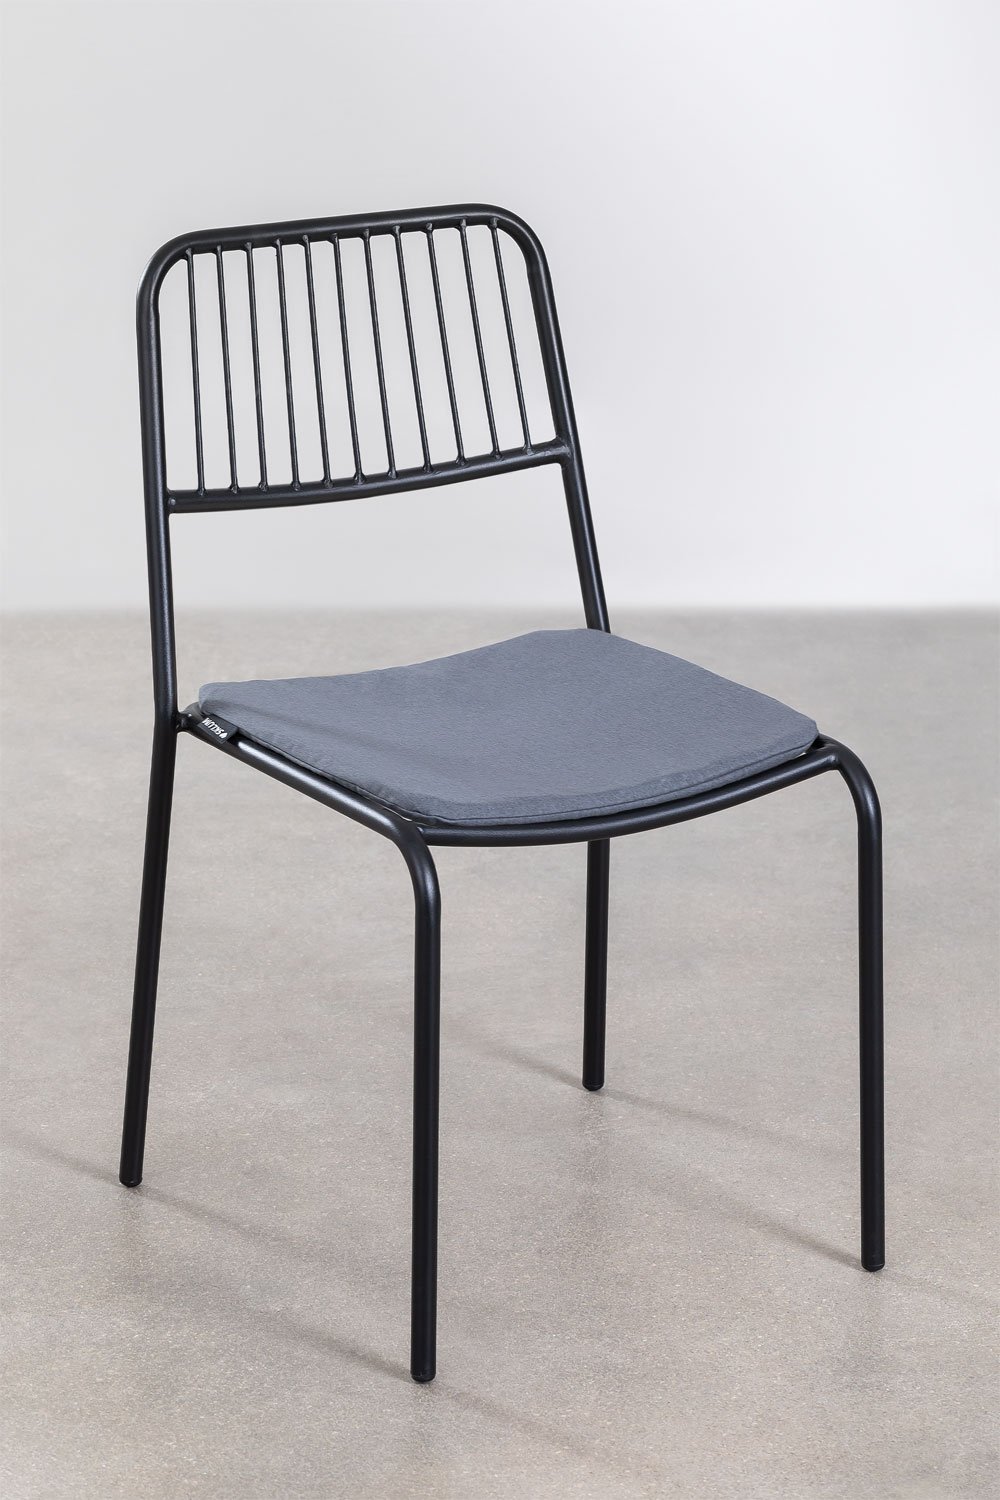 Cushion voor stoel Elton, galerij beeld 2